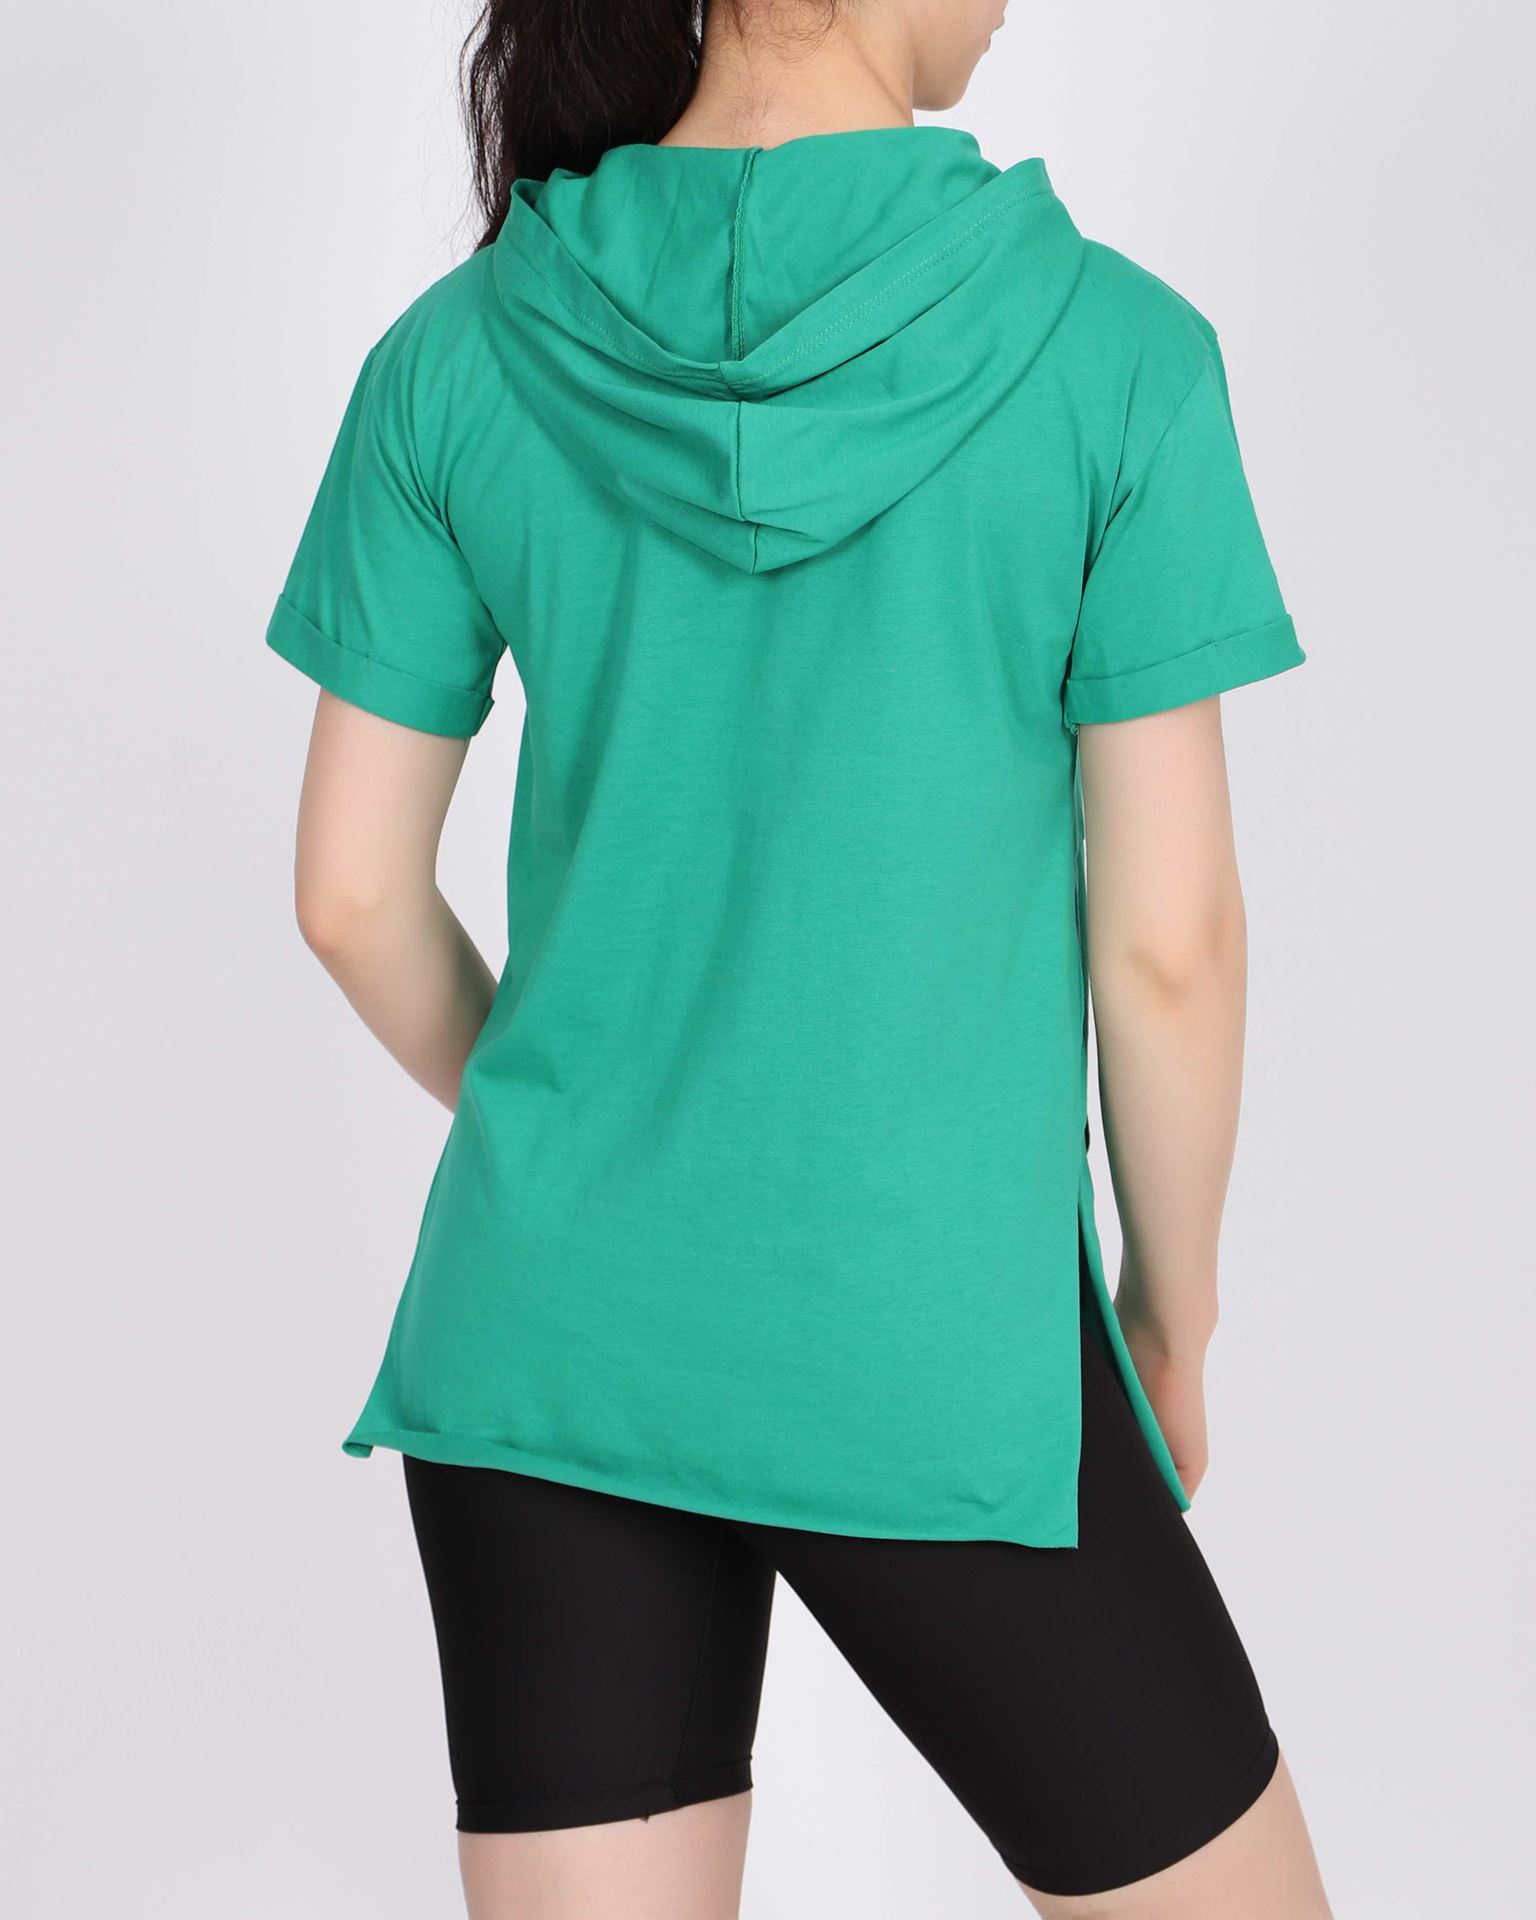 Yeşil Kapşonlu Ayıcık Tasarımlı T-shirt TSH294